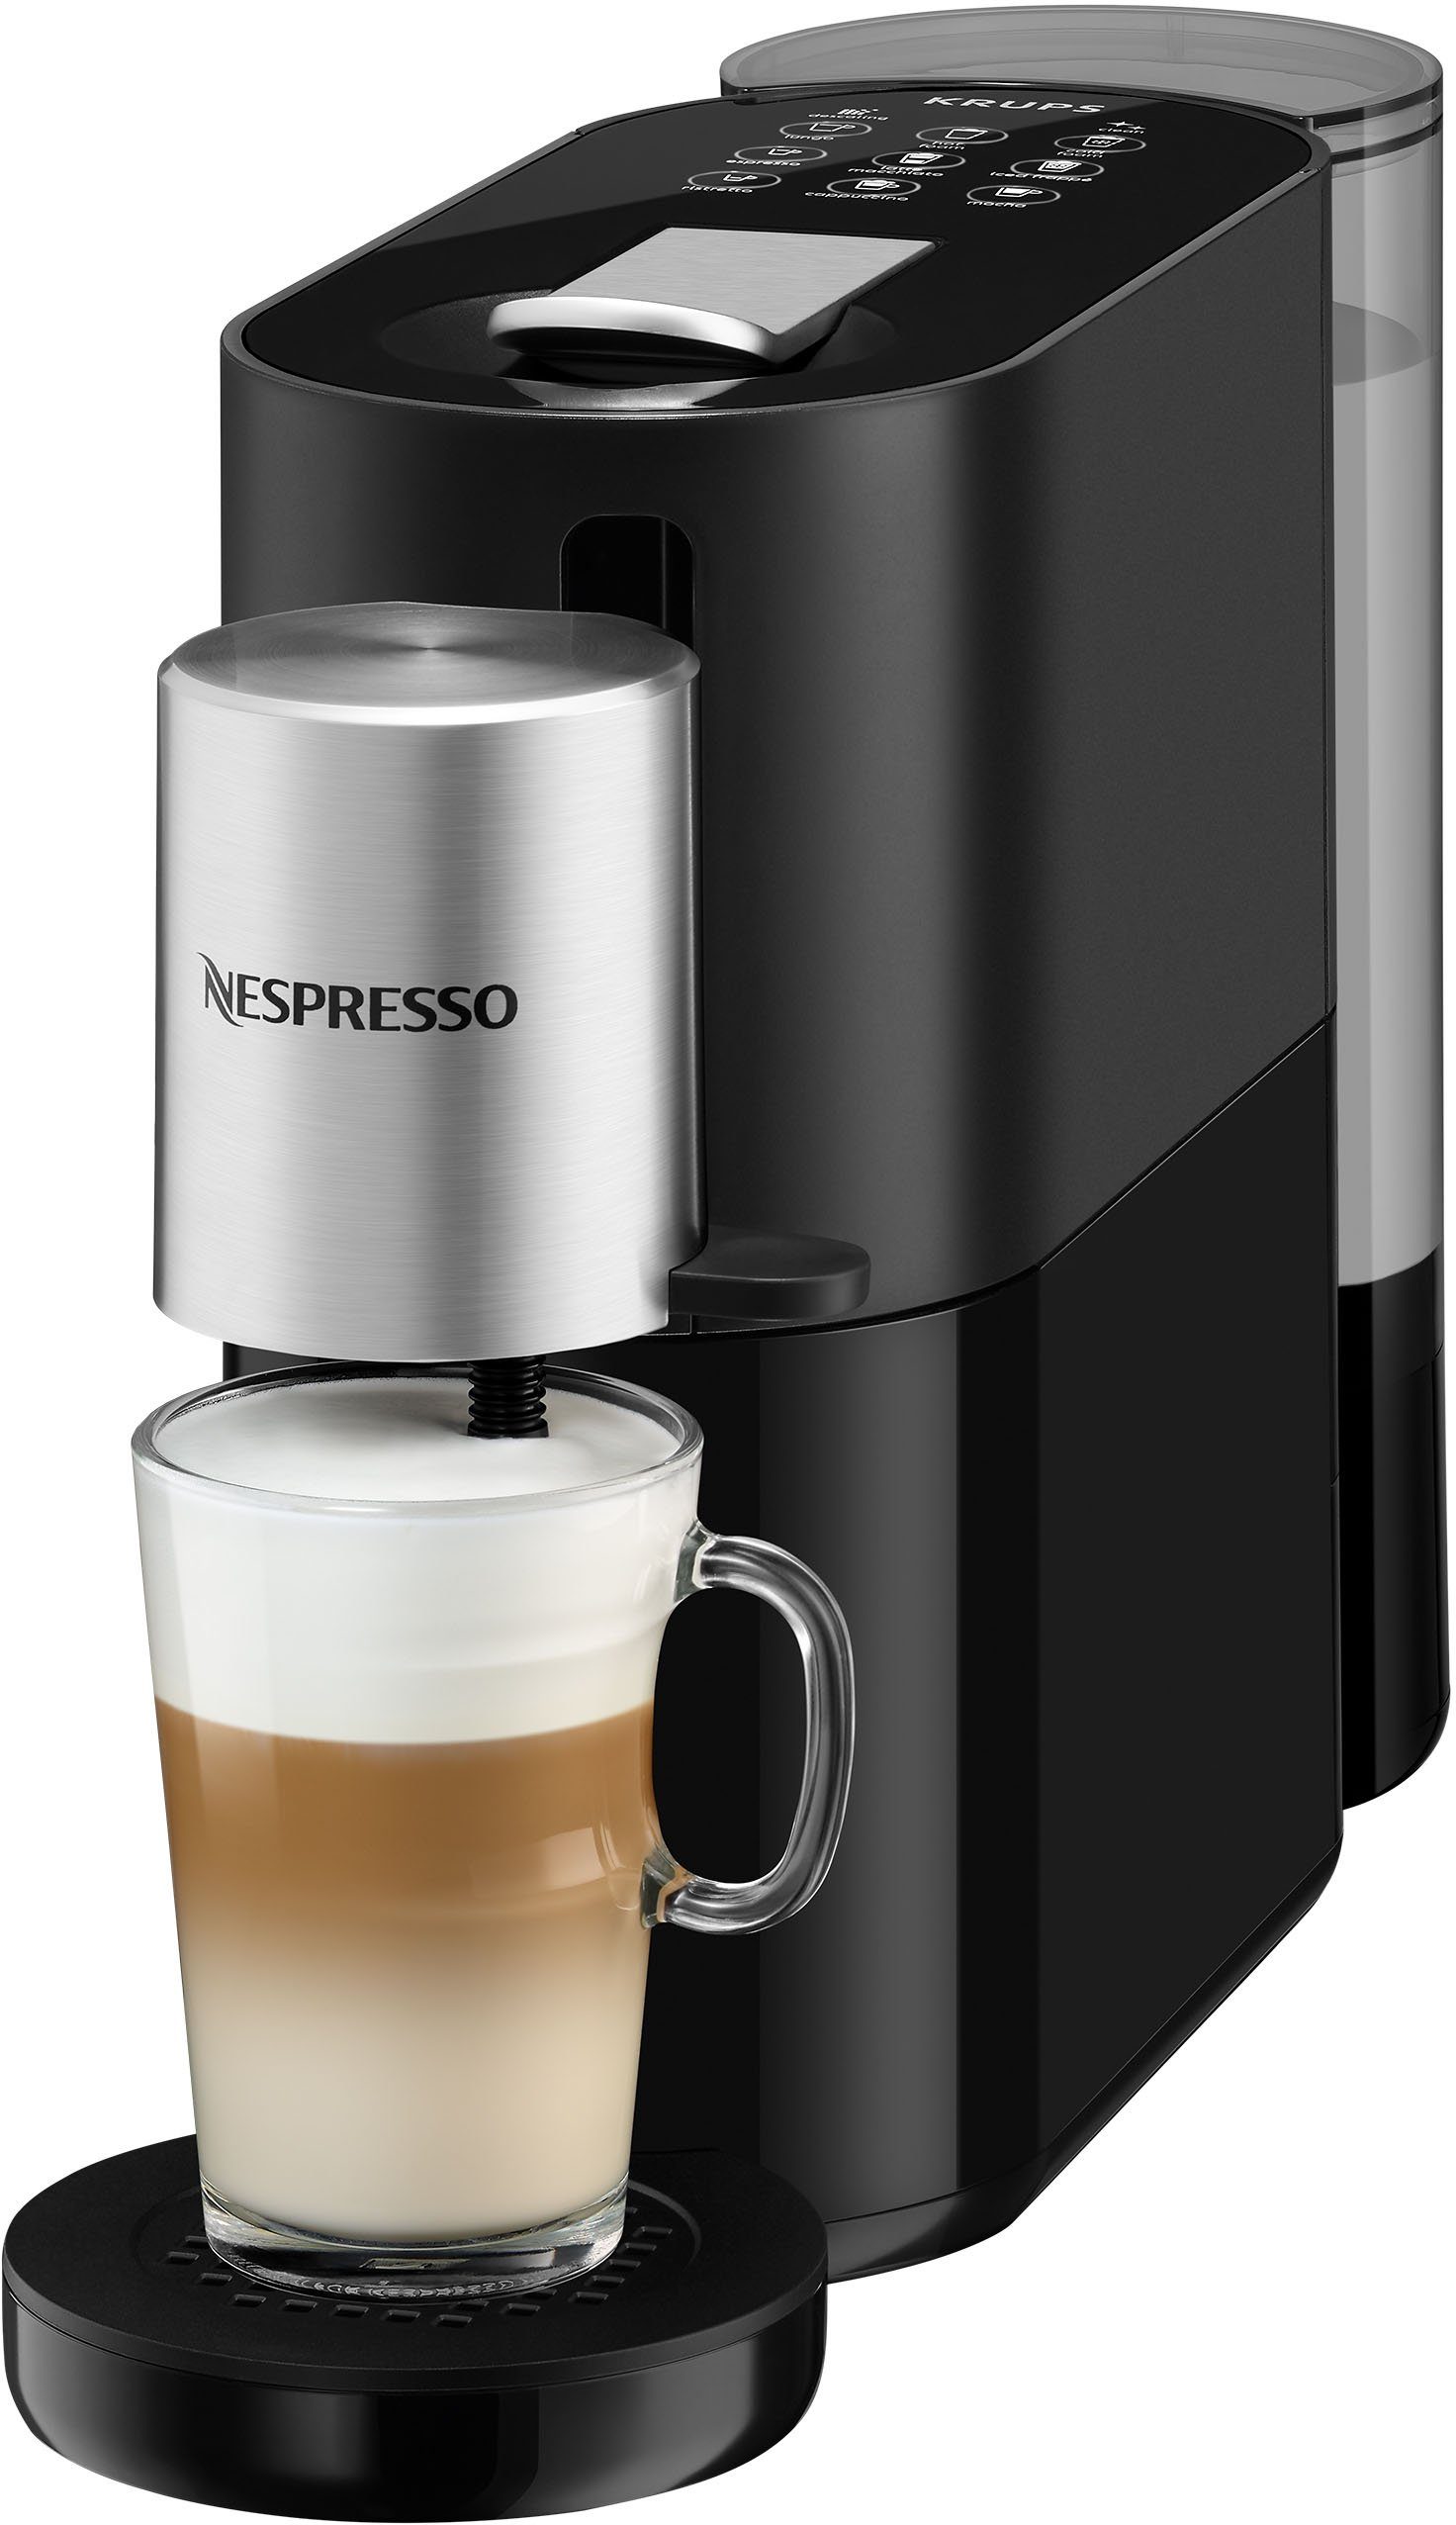 von 1 Nespresso 19 Wassertank: Druck, Kapseln Glastasse L, Bar Atelier inkl. Nespresso Kapselmaschine + XN8908 Krups,